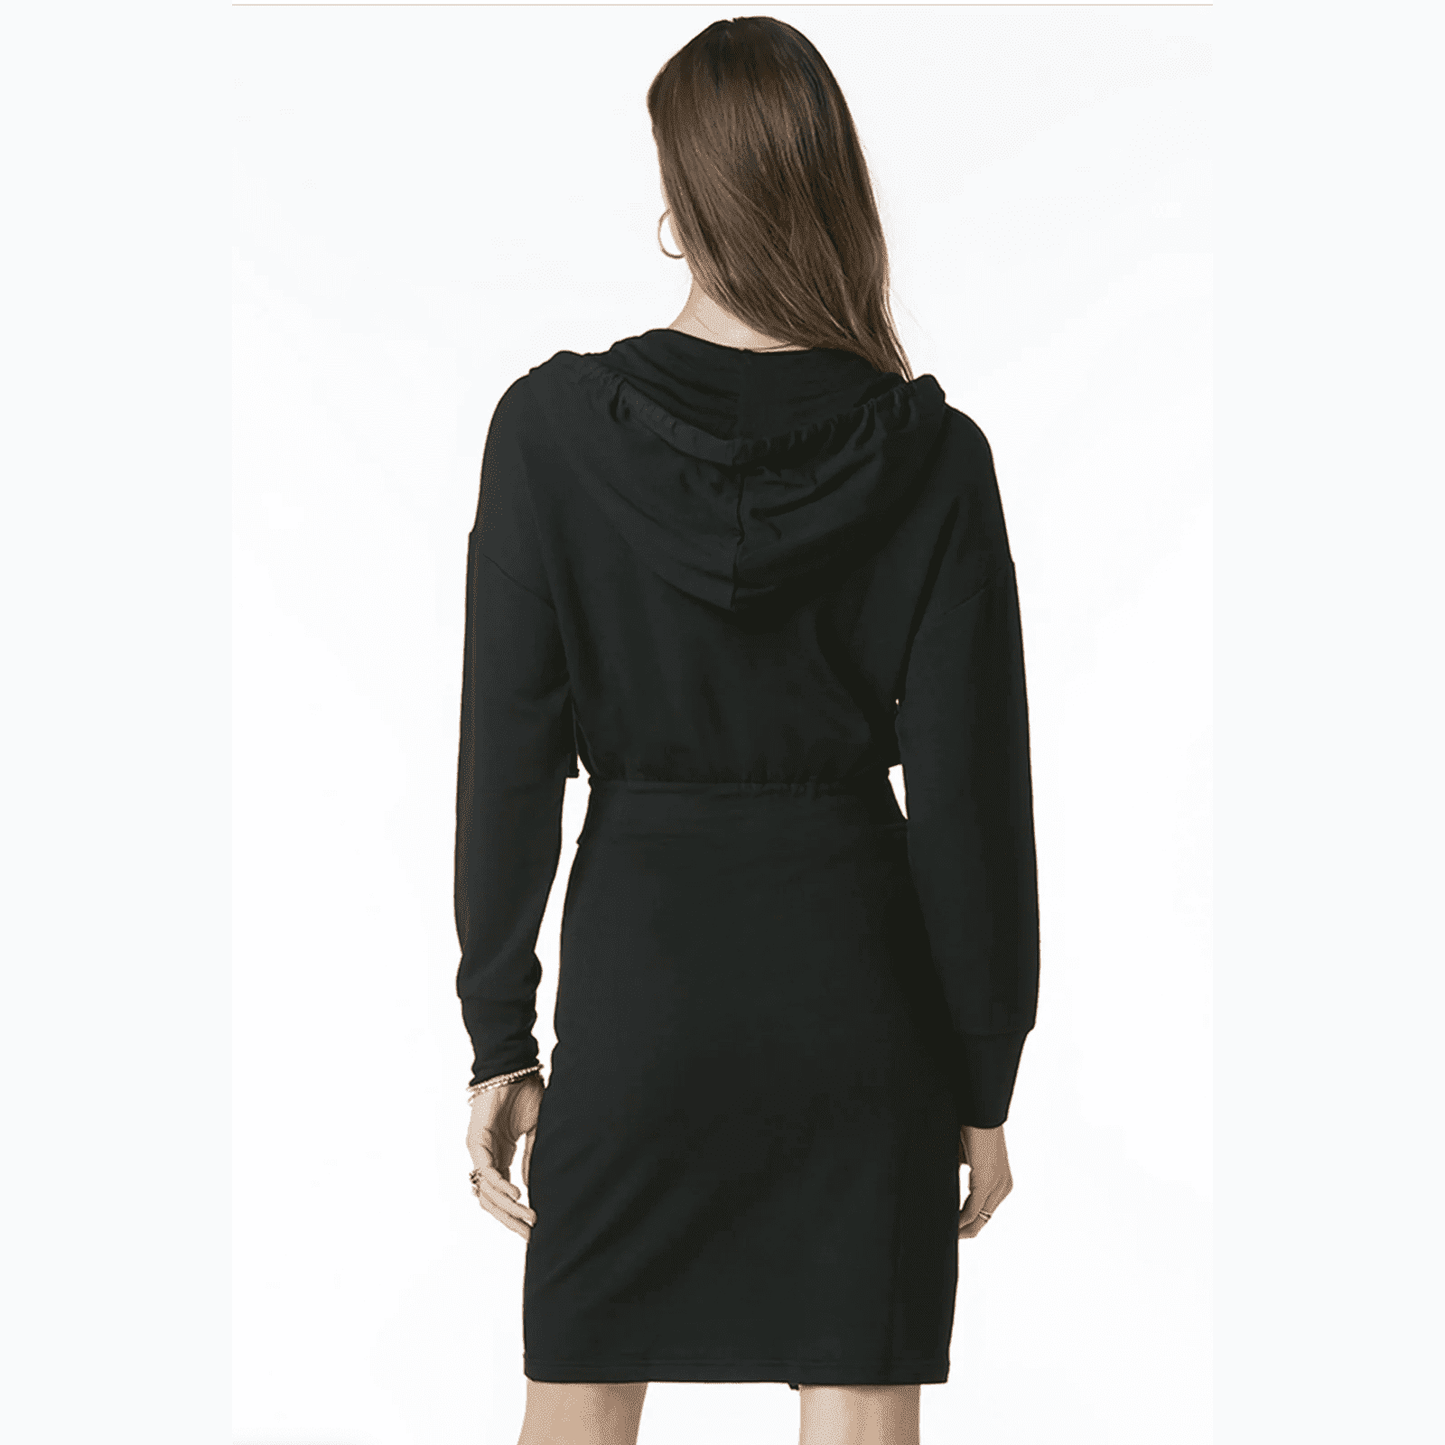 Tart Collection Quixley Zipper Fitted Waist Hoodie Dress - Black